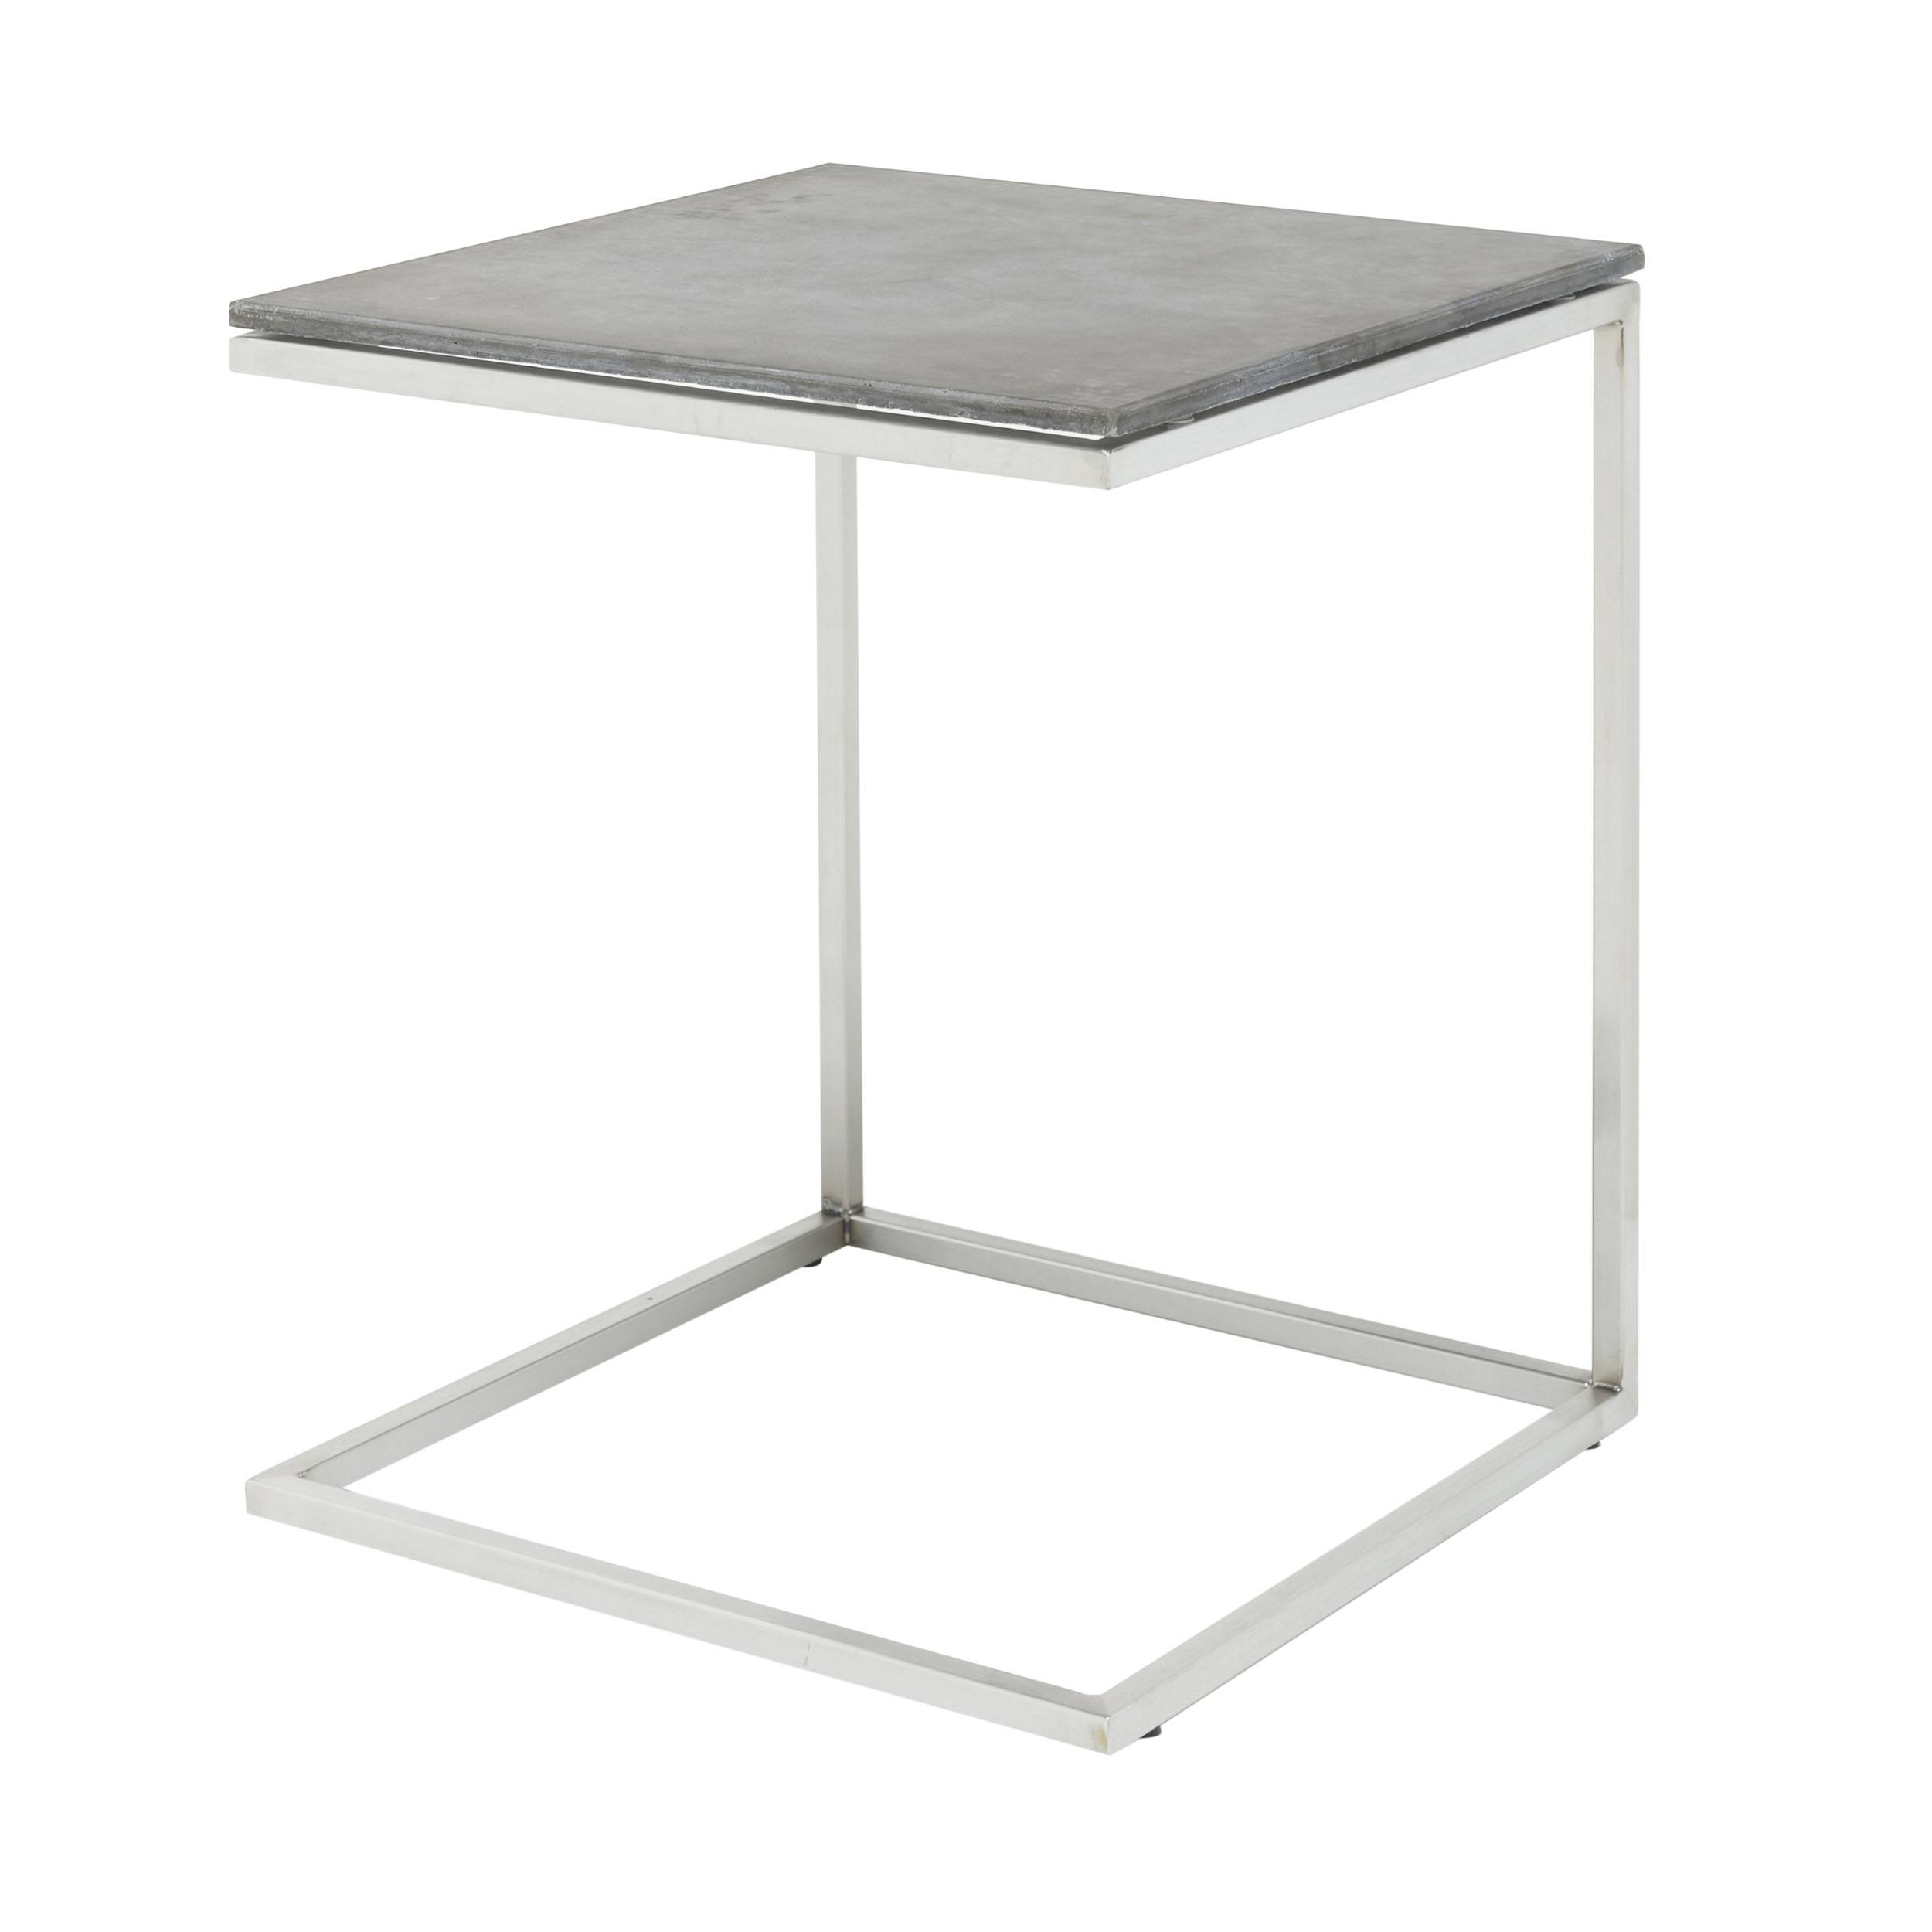 Table d'appoint Pizzo en béton avec structure en acier inoxydable